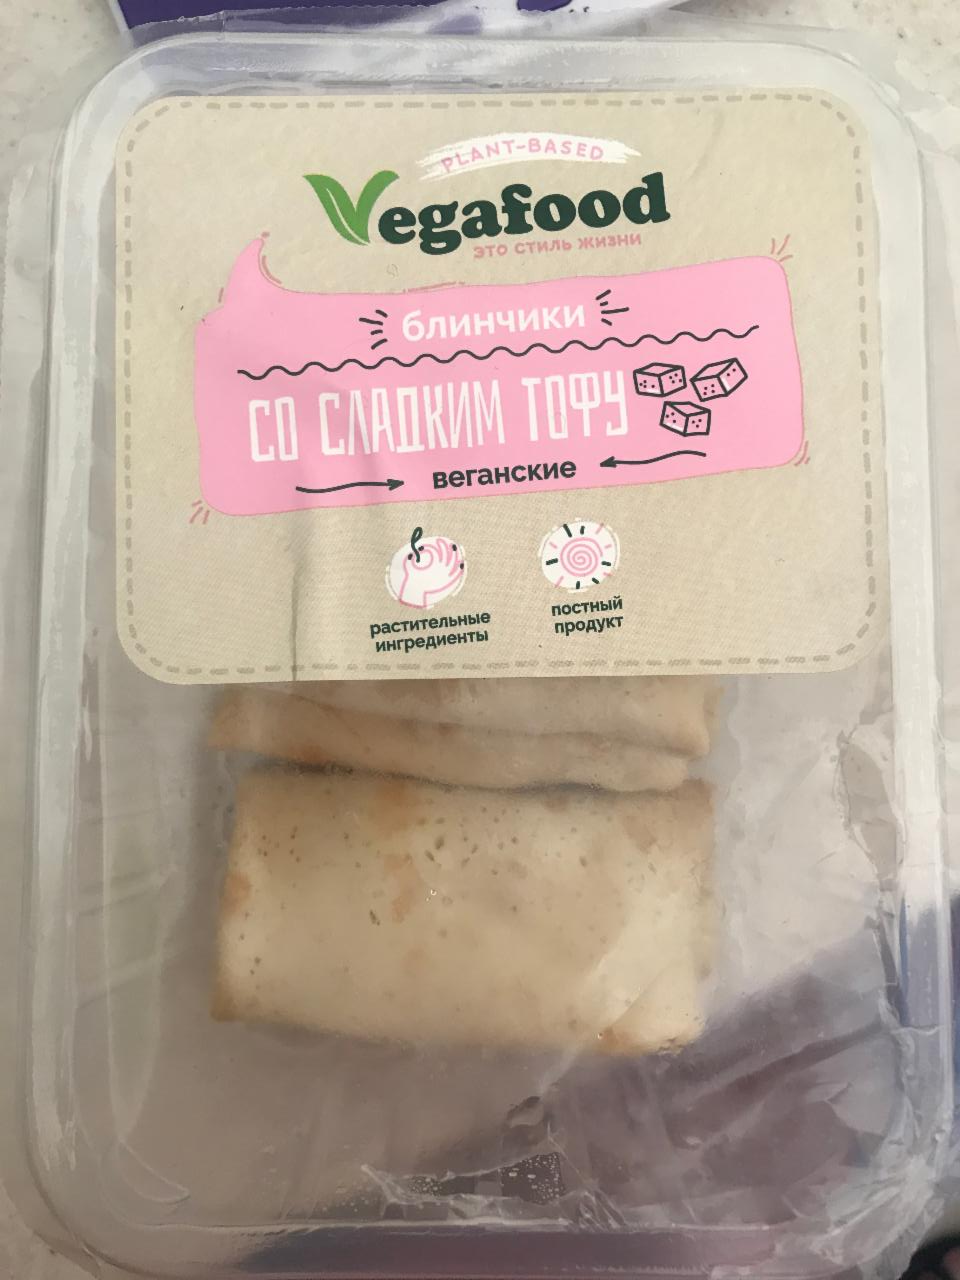 Фото - Блинчики со сладким тофу веганские Vegafood